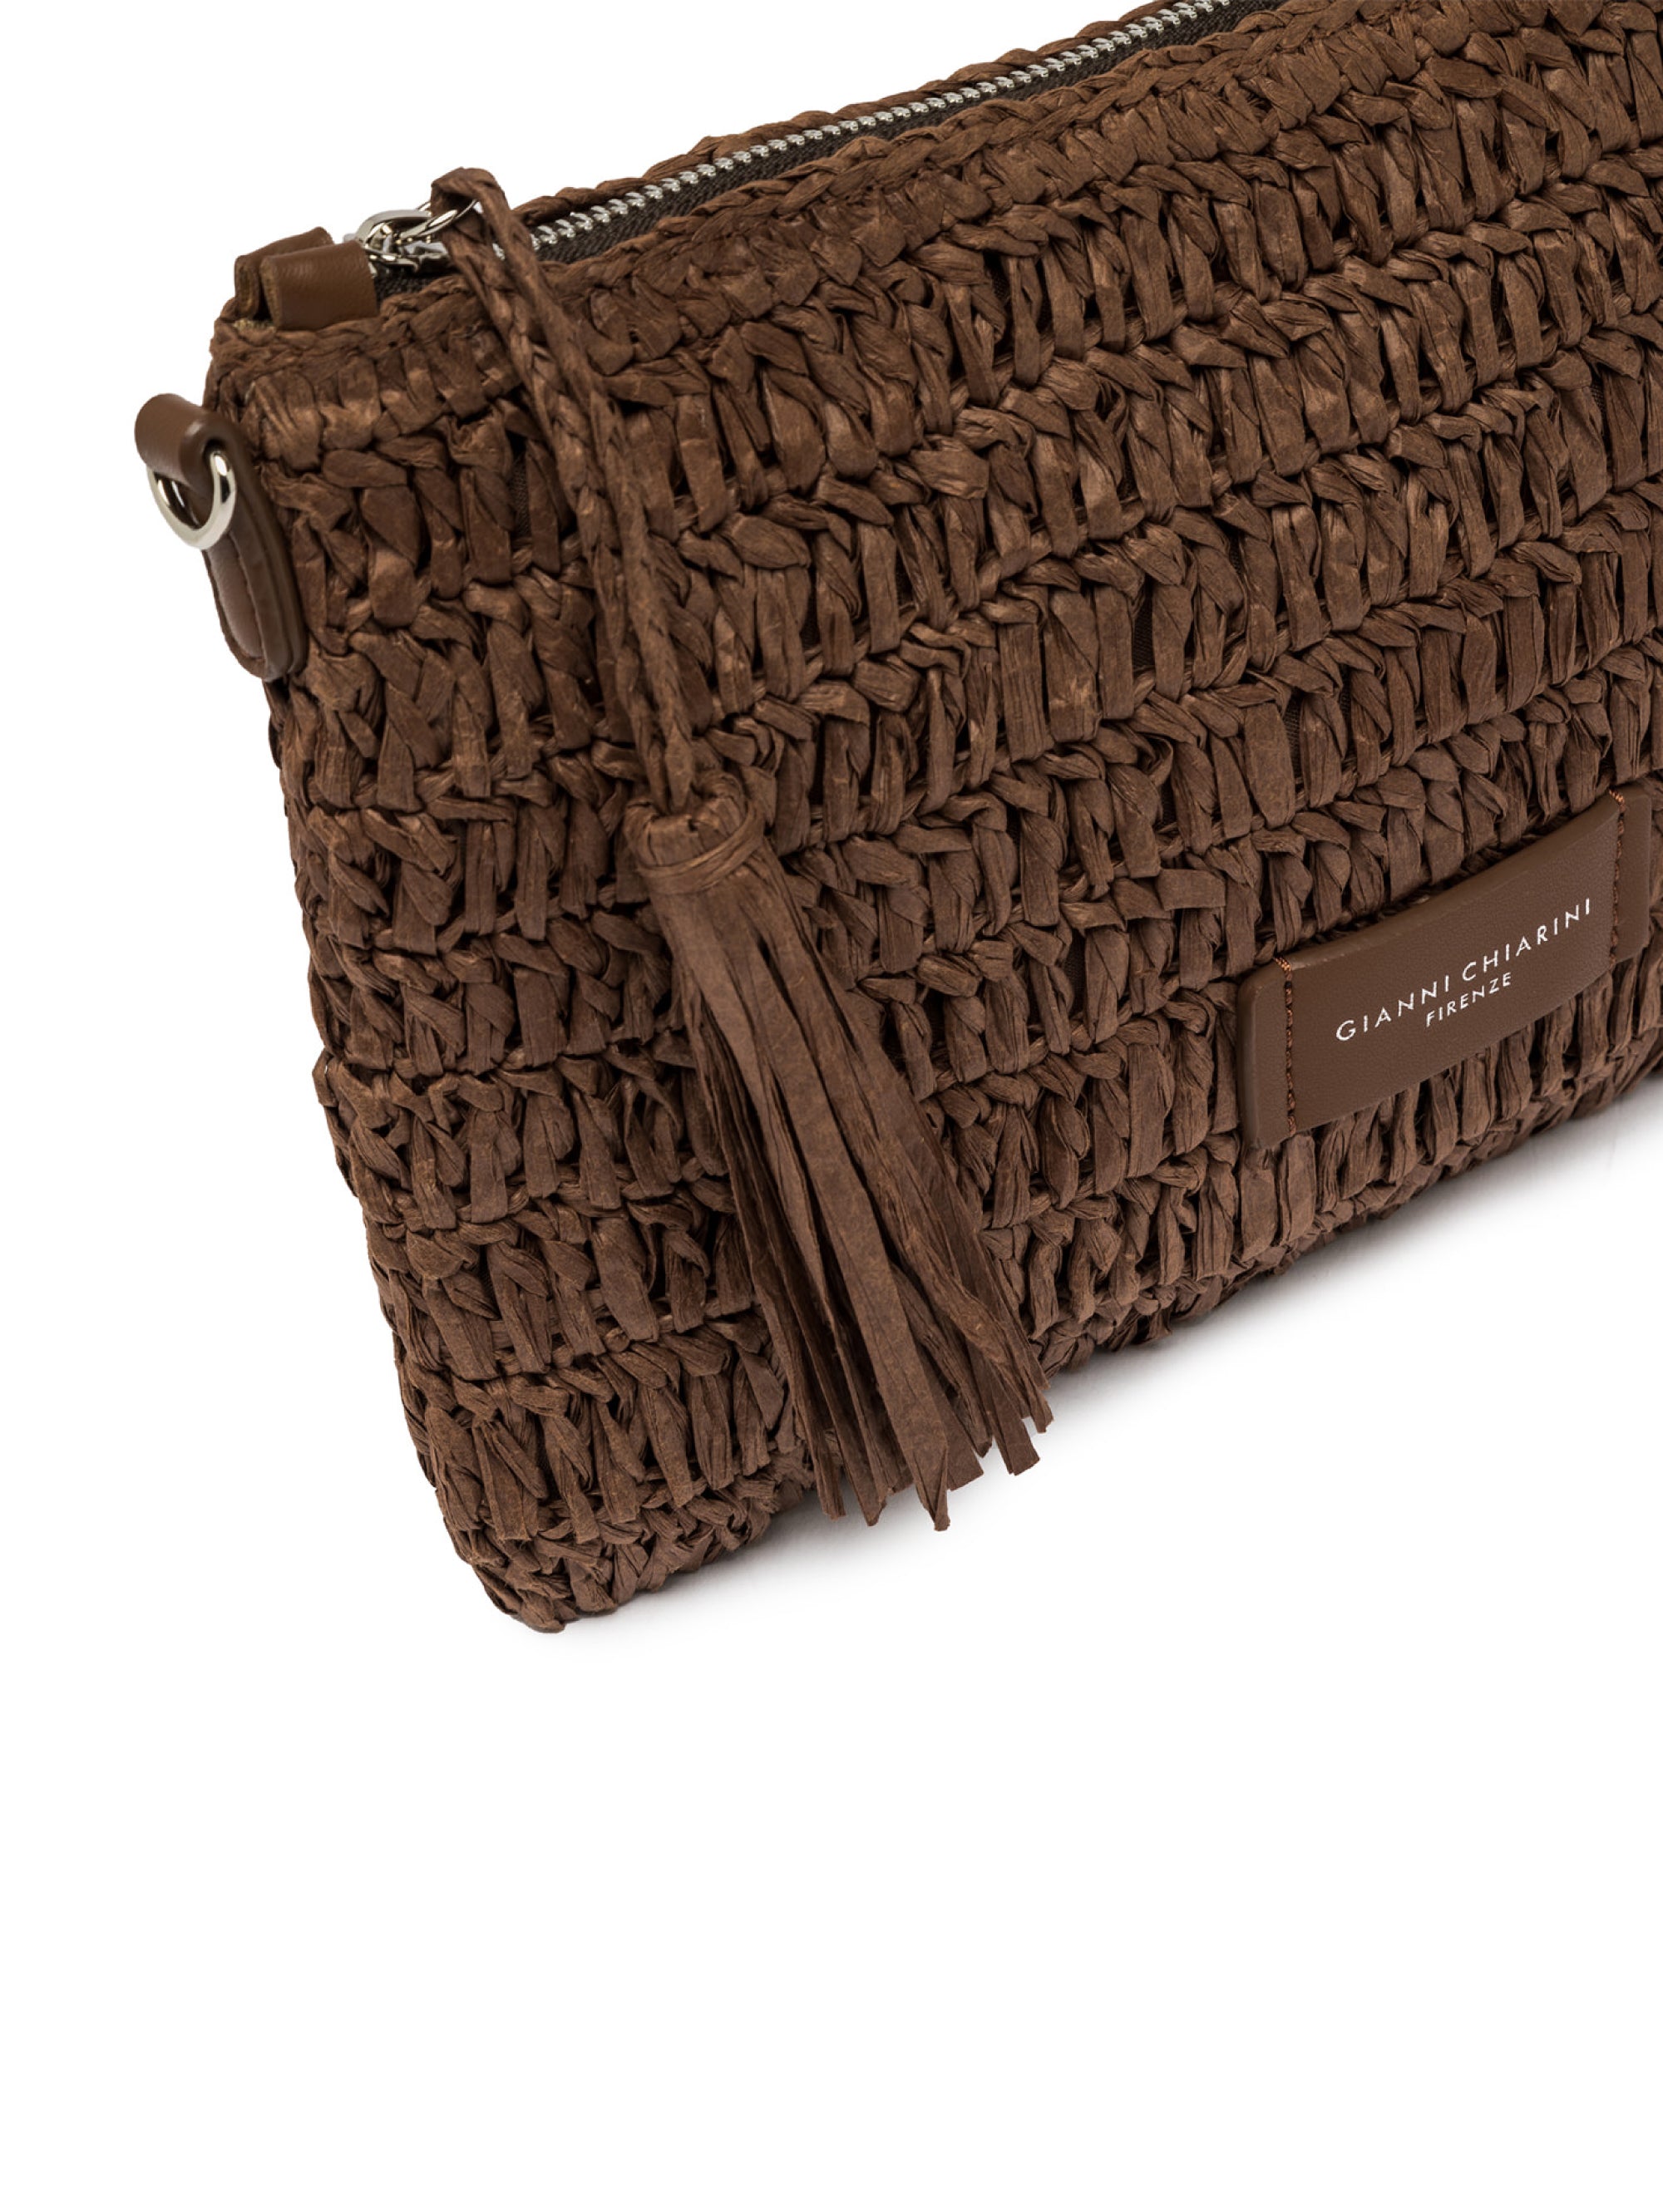 Straw clutch bag with coffee crochet workmanship